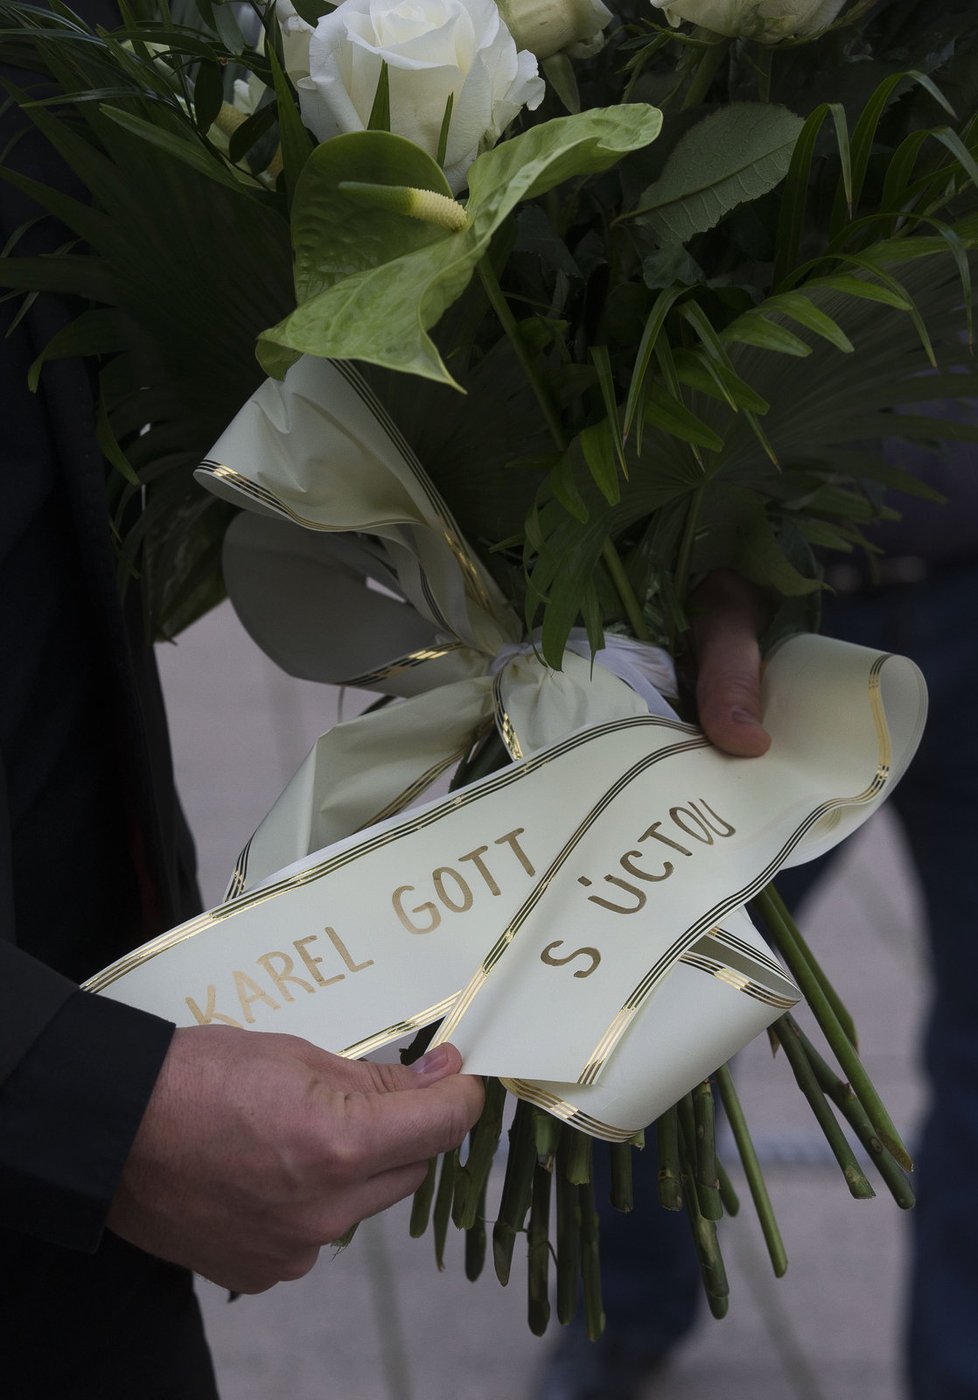 Bodyguard nese smuteční kytici se vzkazem od Karla Gotta.